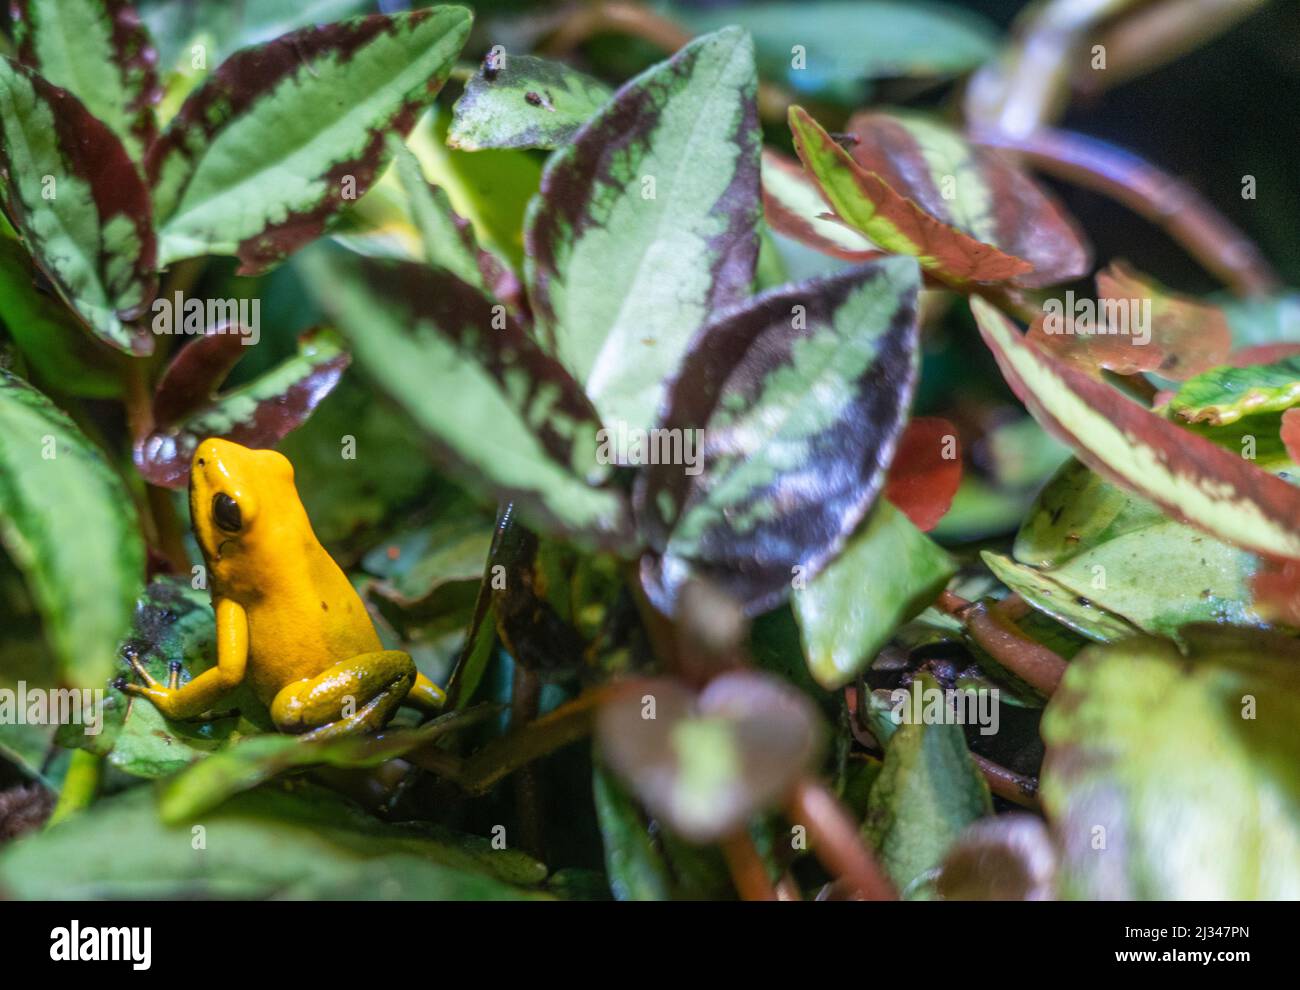 Golden Dart Frog in an aquarium terrarium. Stock Photo